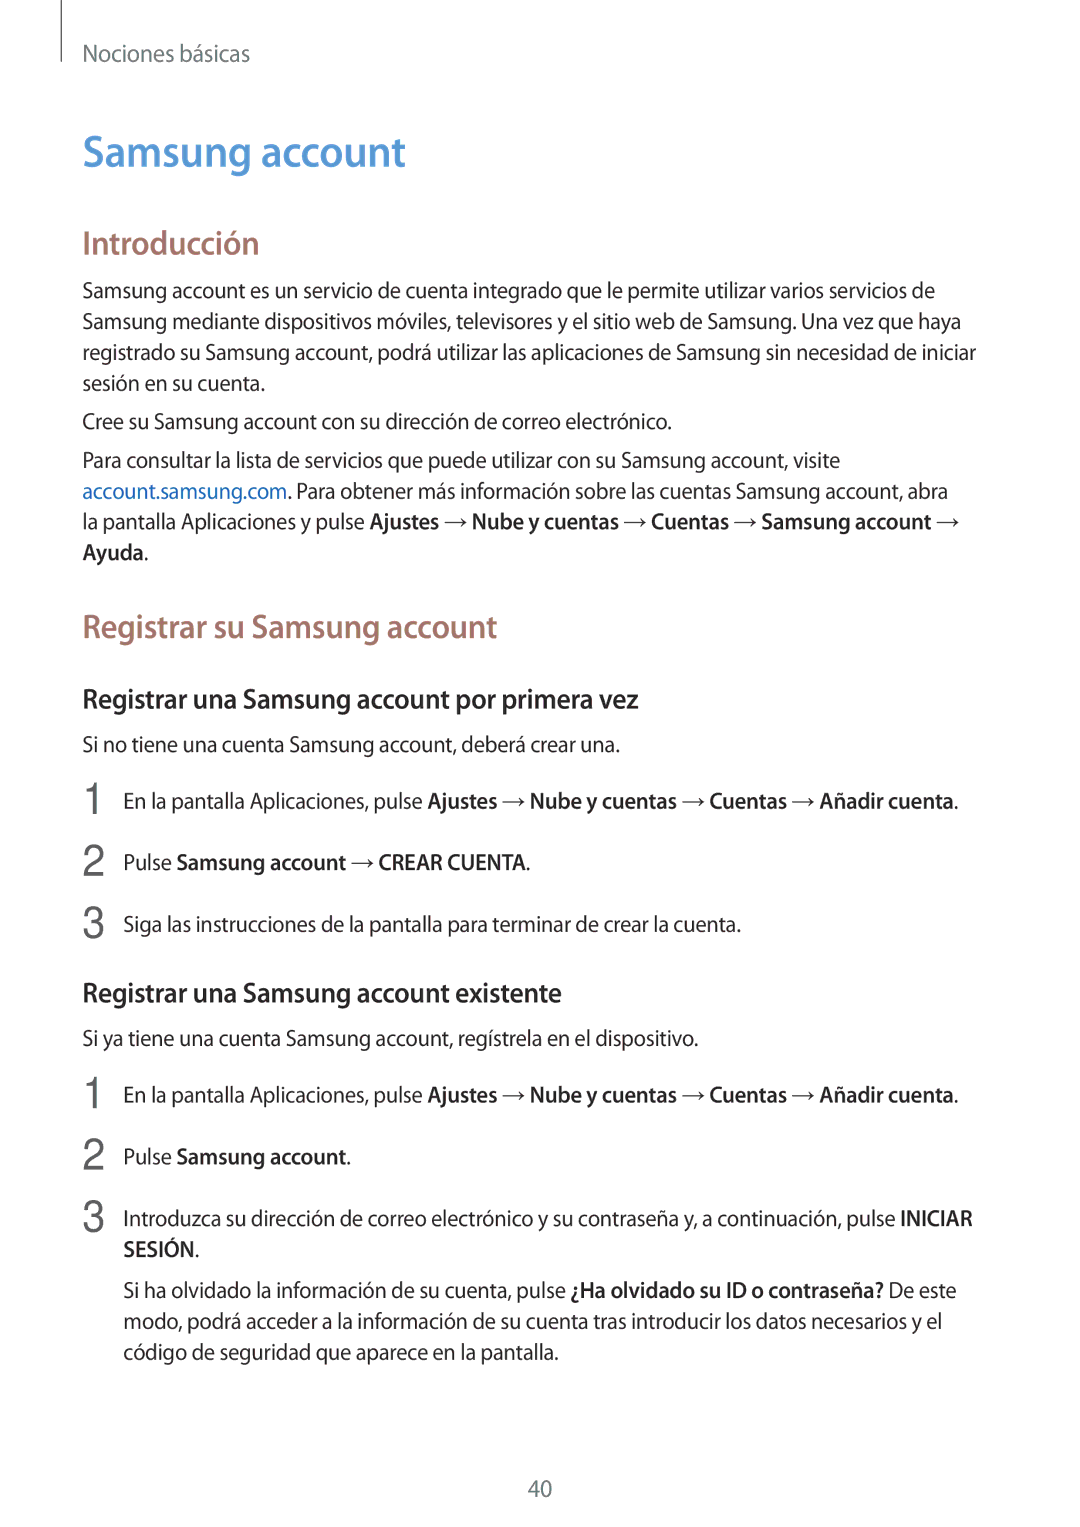 Samsung SM-T819NZKEPHE, SM-T719NZWEPHE Registrar su Samsung account, Registrar una Samsung account por primera vez 